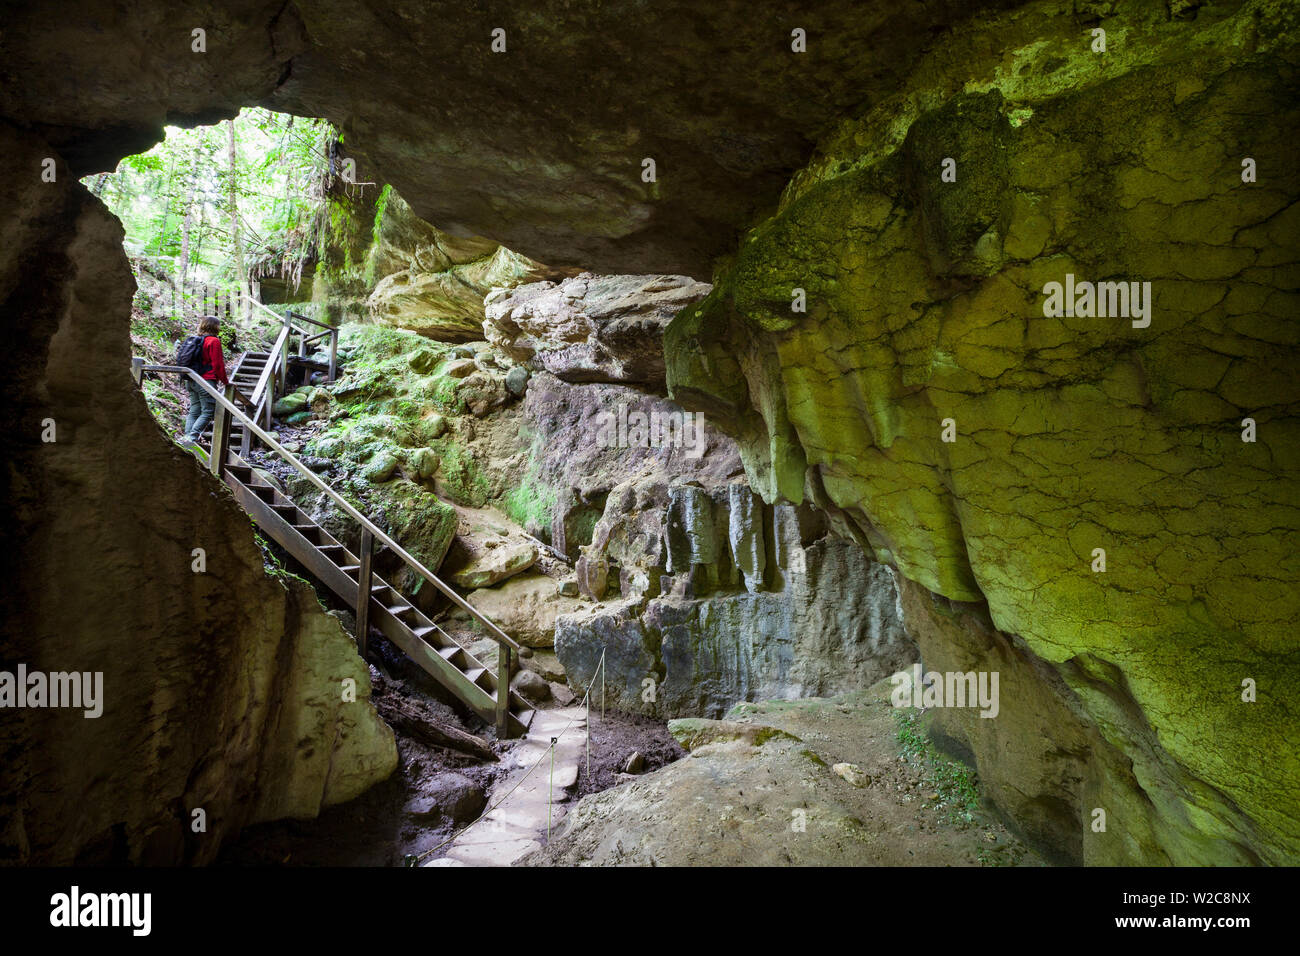 Grotte de calcaire de l'exploration touristique, Karamea, West Coast, South Island, New Zealand Banque D'Images